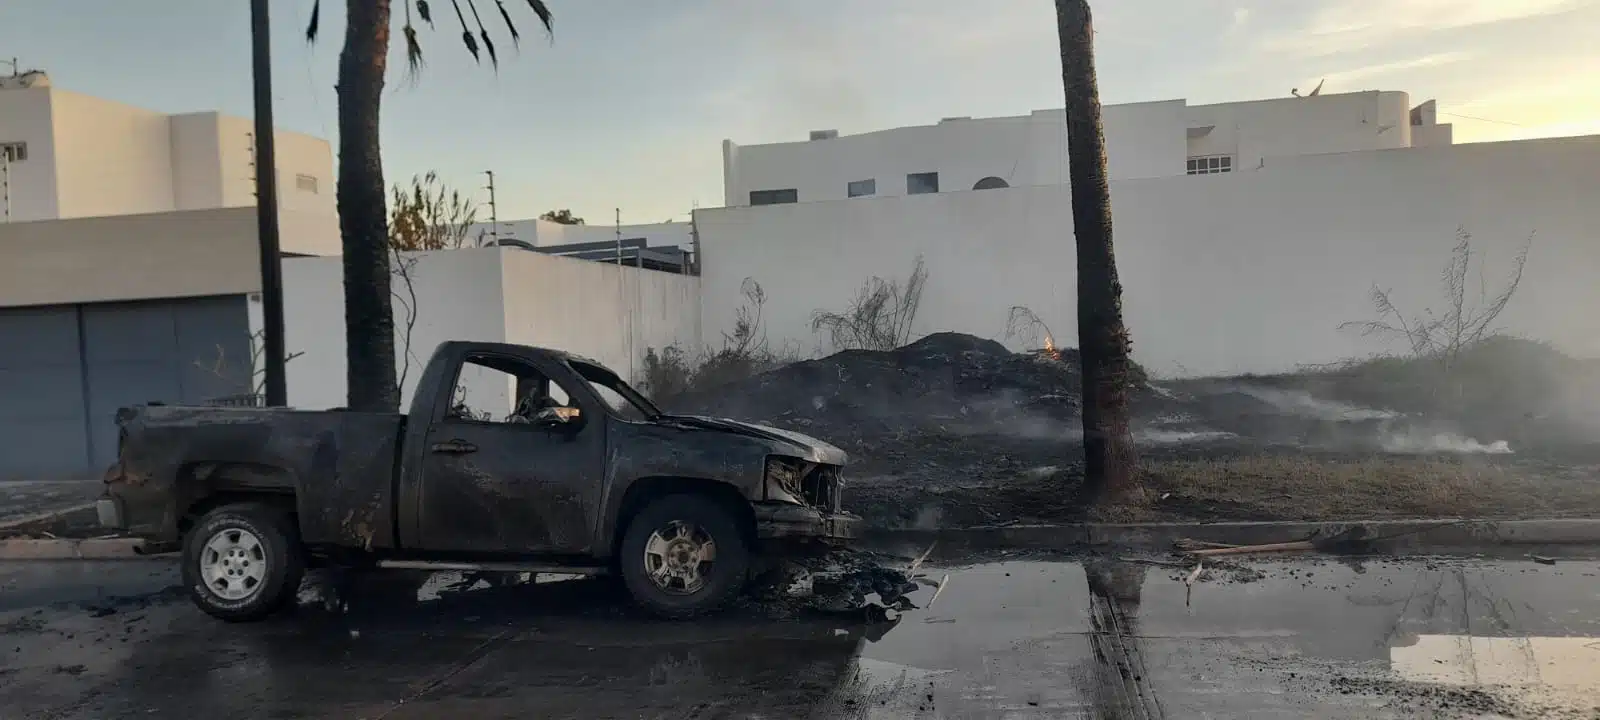 Incendio en baldío se sale de control; alcanza camioneta y queda calcinada en Los Mochis